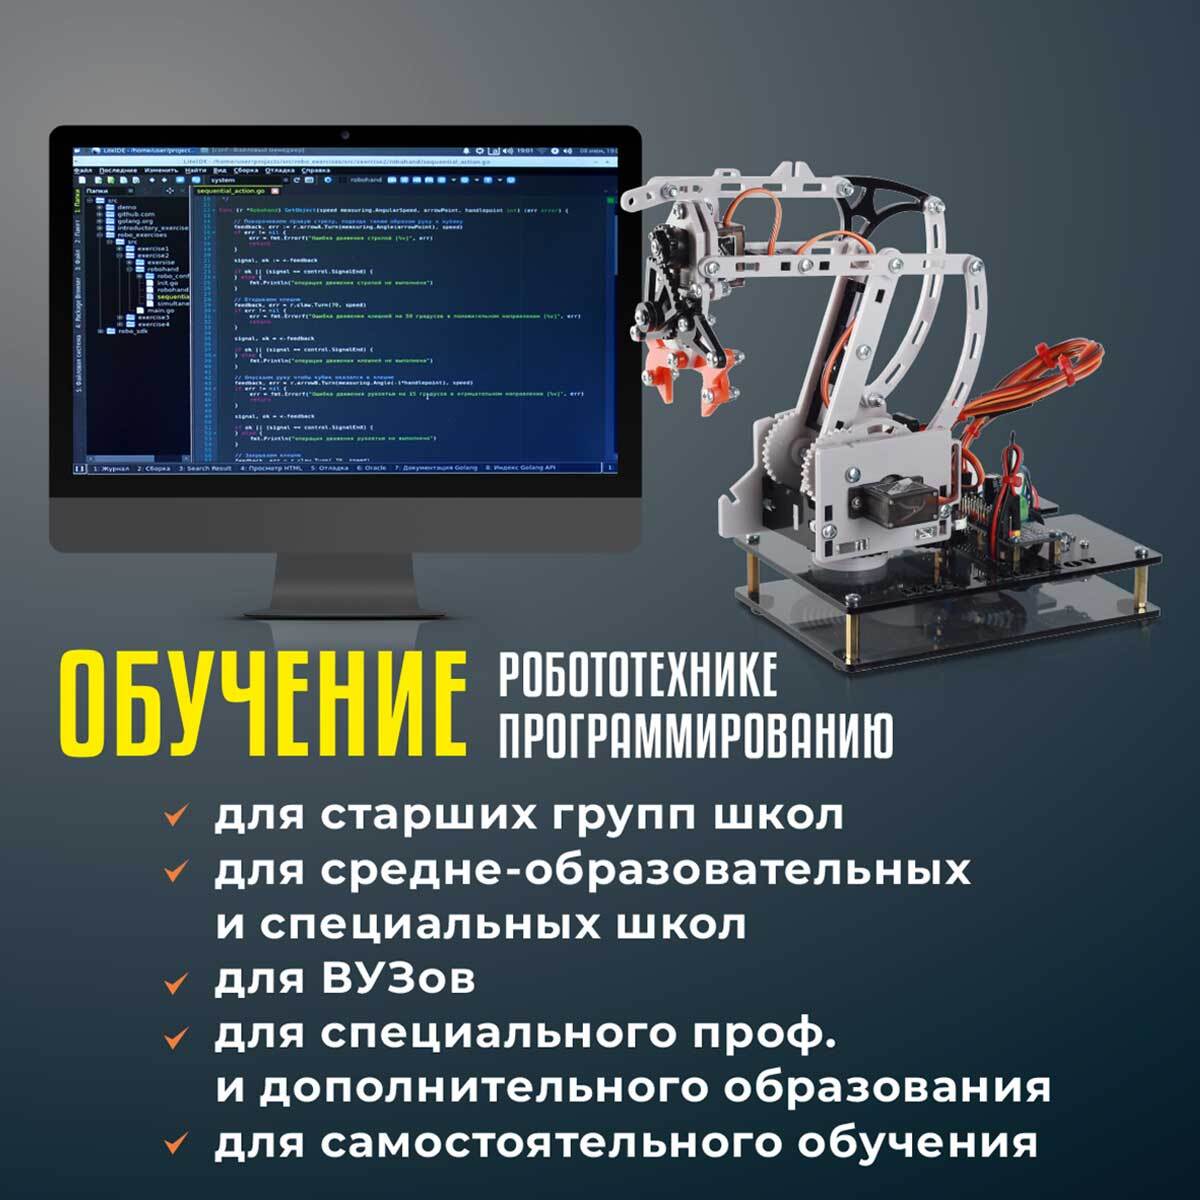 Робот конструктор RoboIntellect / Электромеханический манипулятор для сборки RM 001 / Программирование на Python